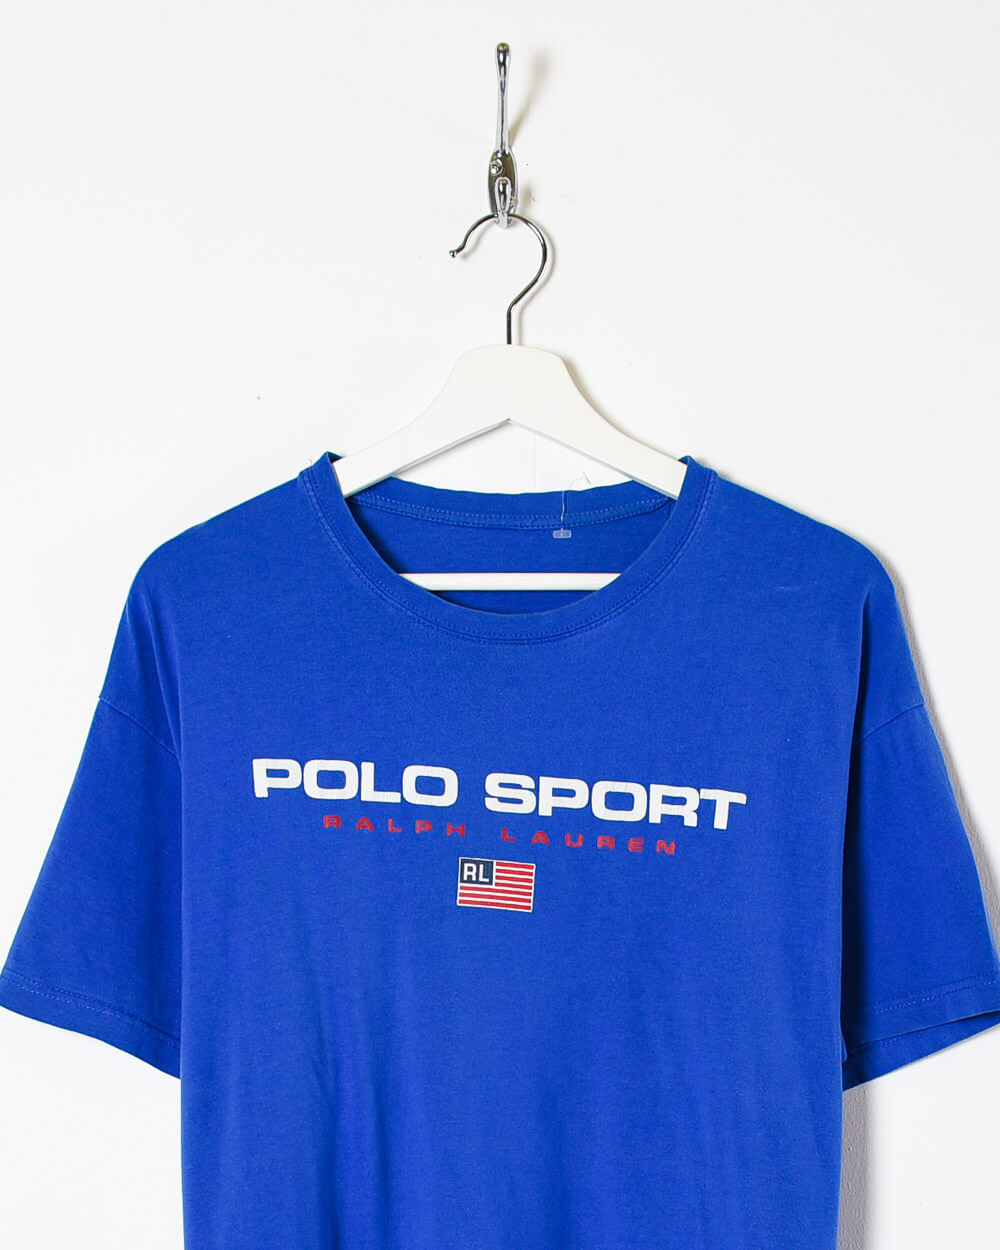 Blue Ralph Lauren Polo Sport T-Shirt - X-Large